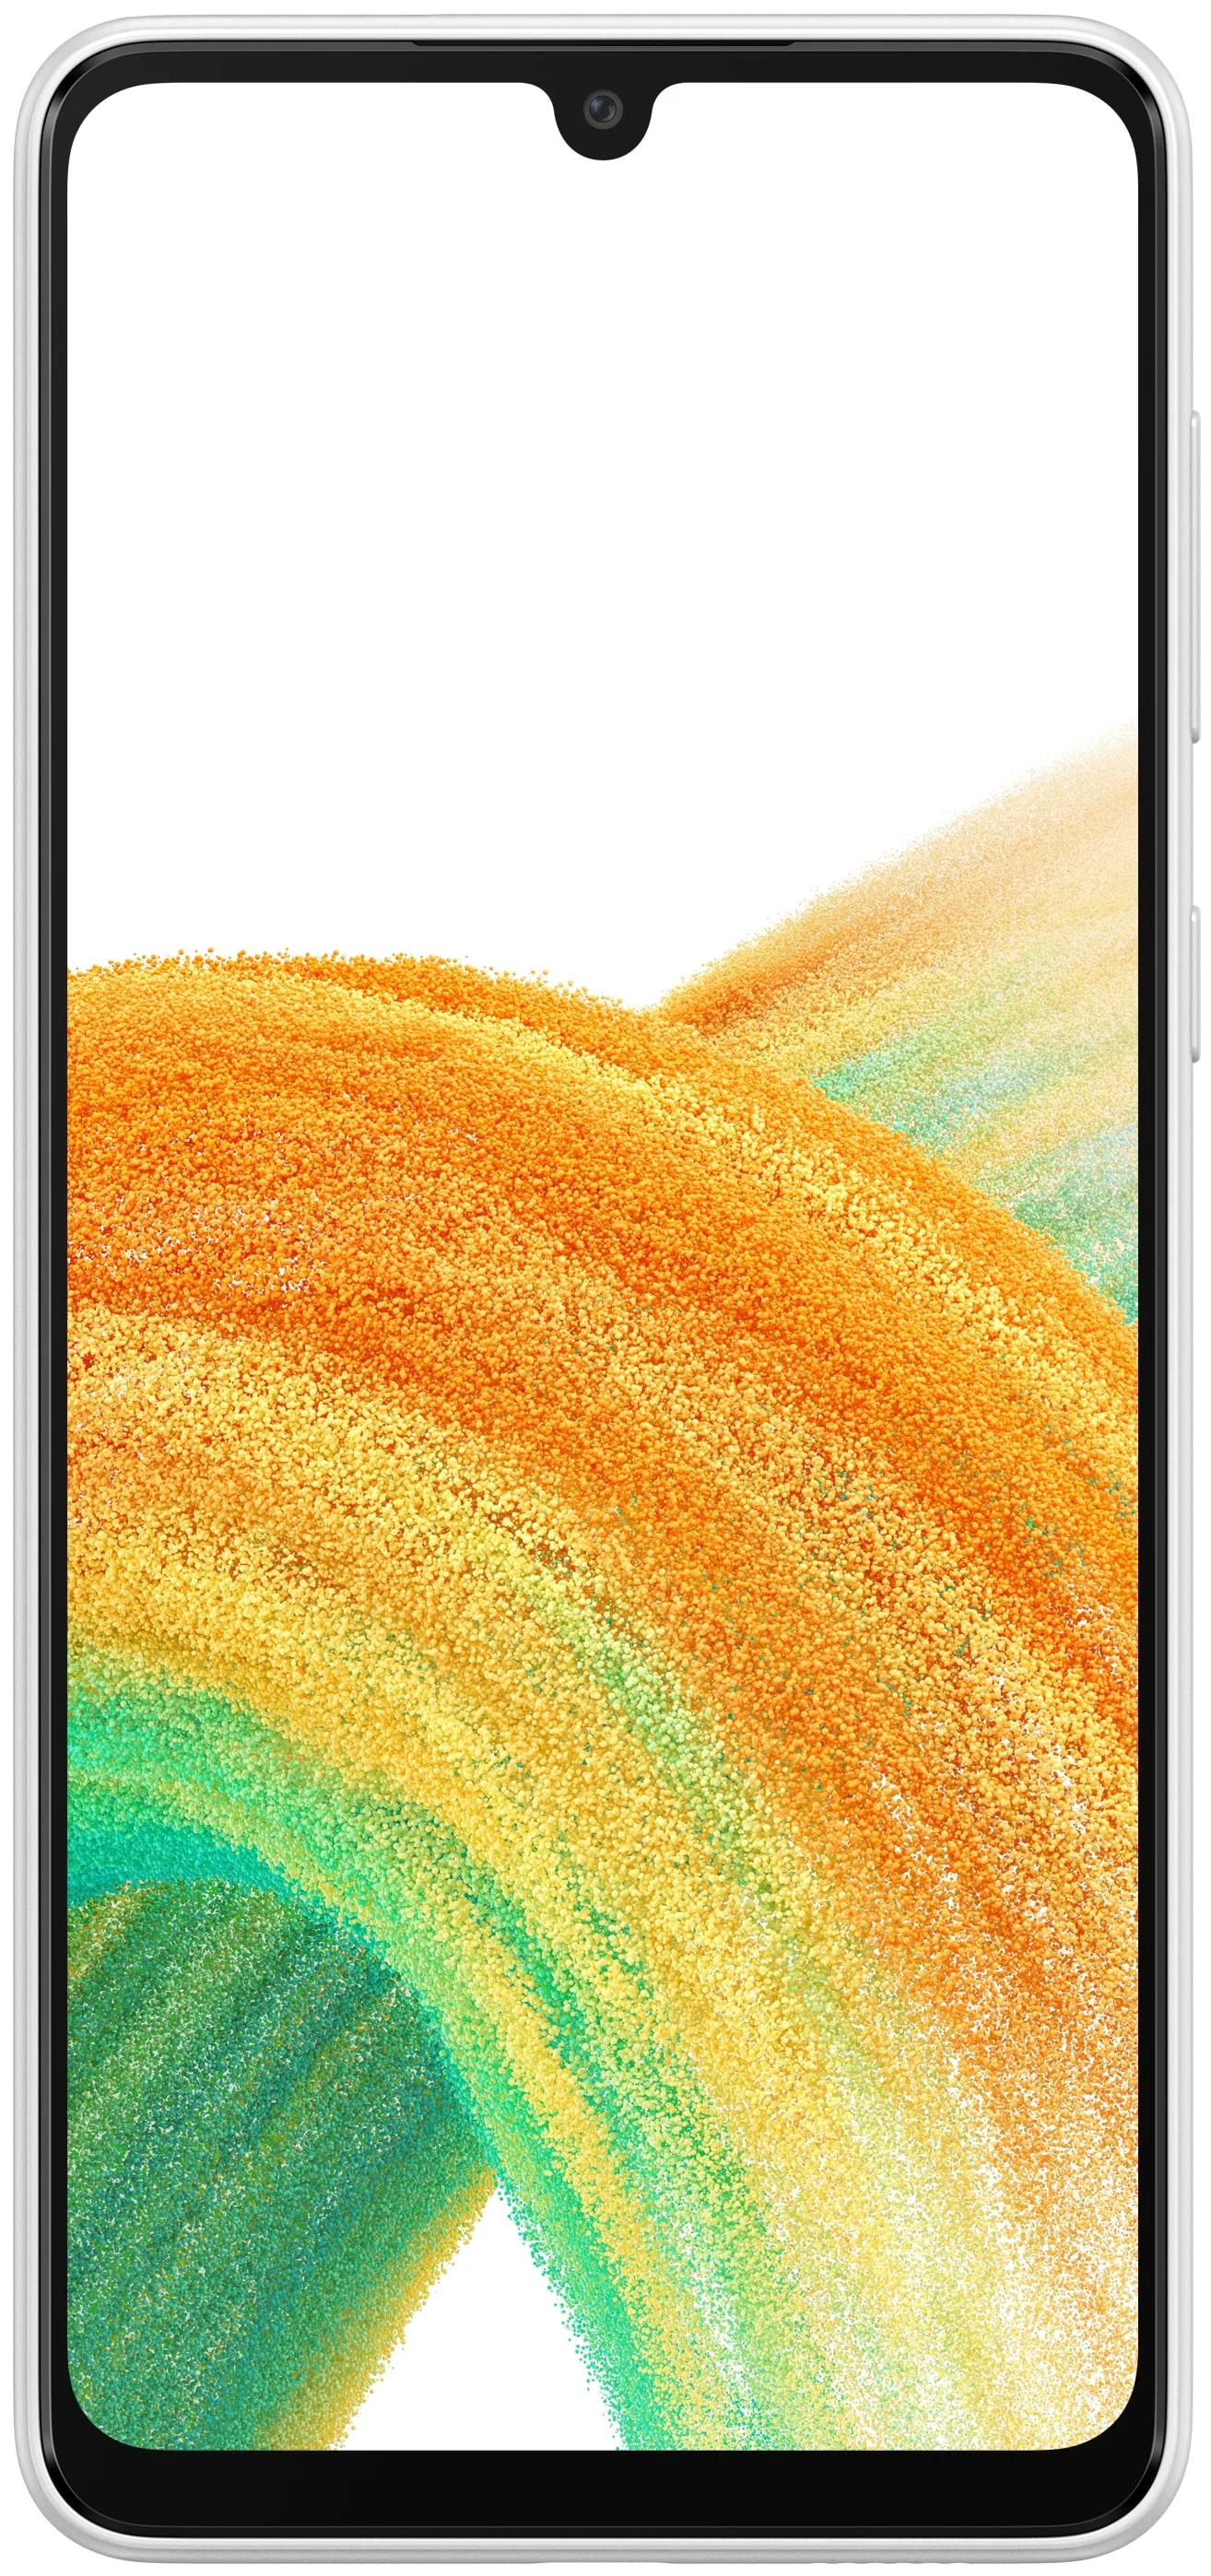 Телефон Samsung Galaxy A33 6+ 128Gb белый (6 месяцев)